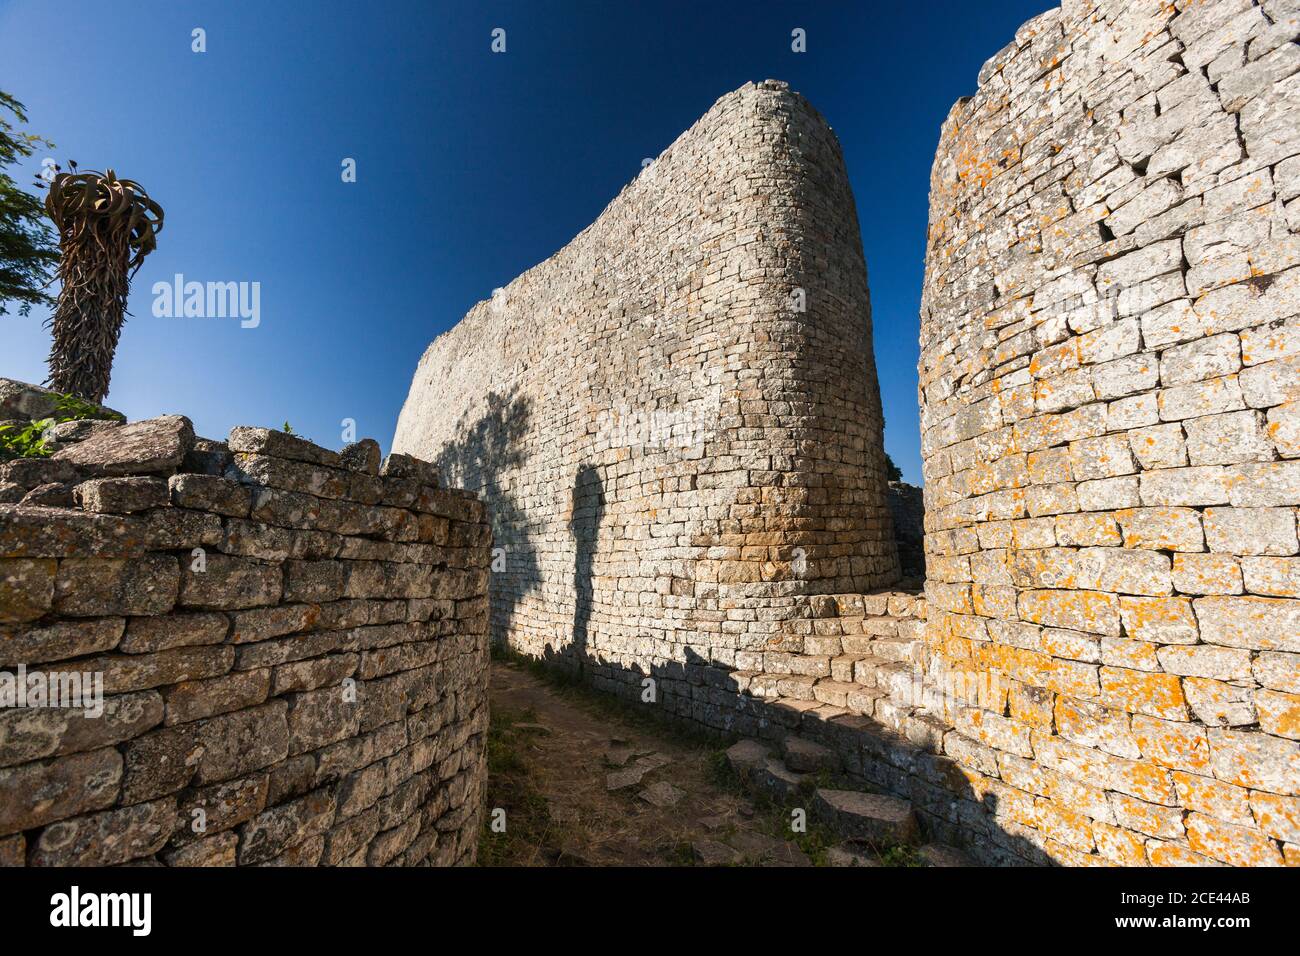 Grandes ruines du Zimbabwe, grand mur et entrée de la Grande enceinte, ancienne capitale de la civilisation Bantu, province de Masvingo, Zimbabwe, Afrique Banque D'Images